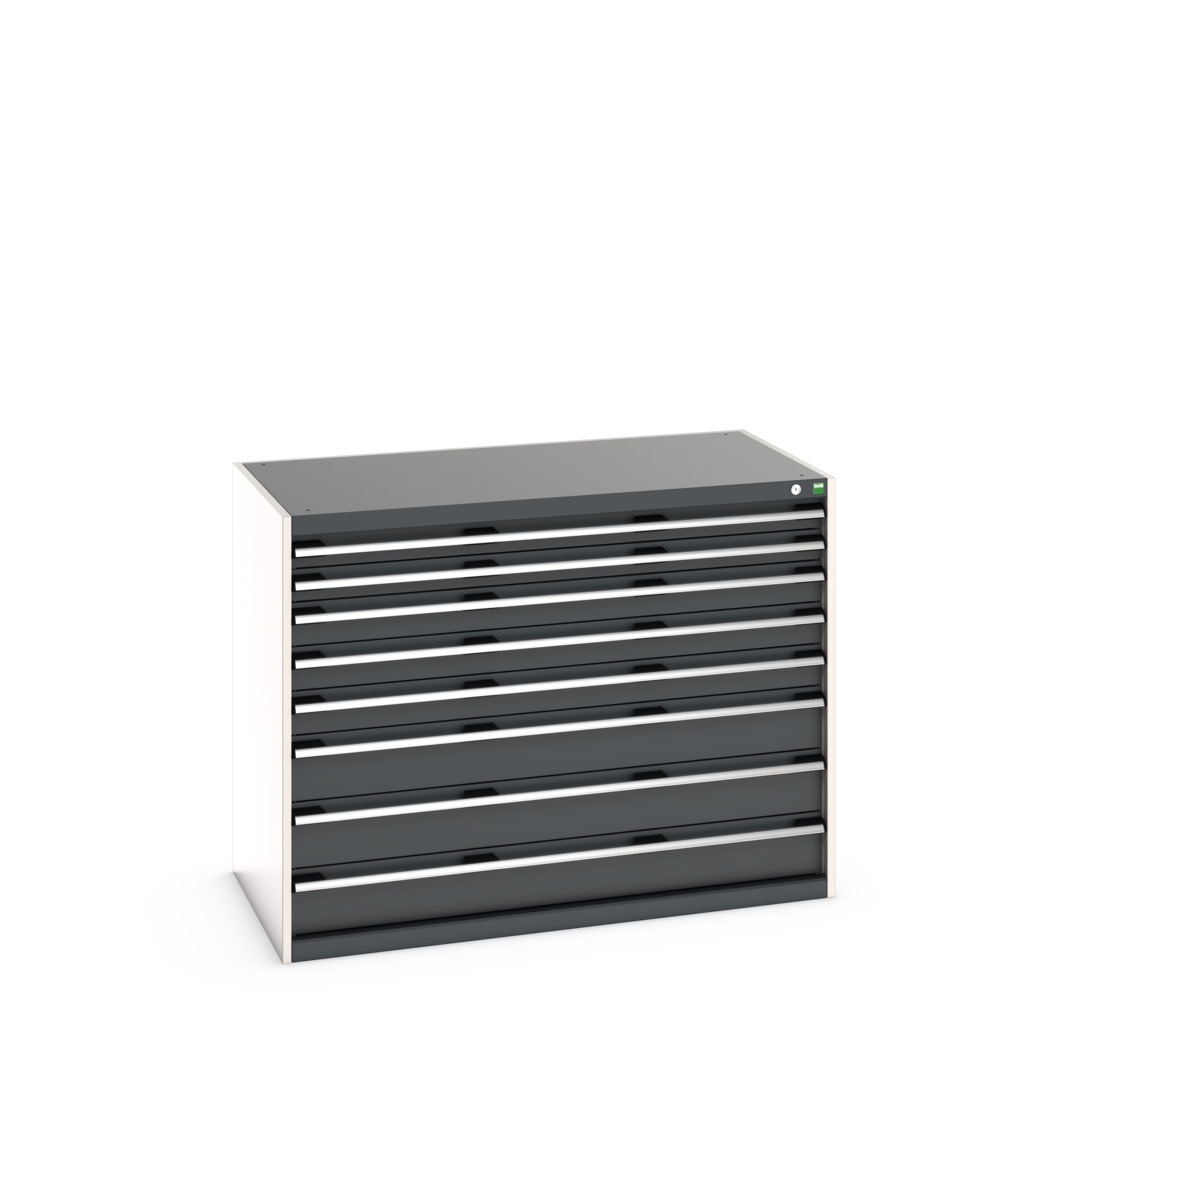 40030019.19V - cubio drawer cabinet